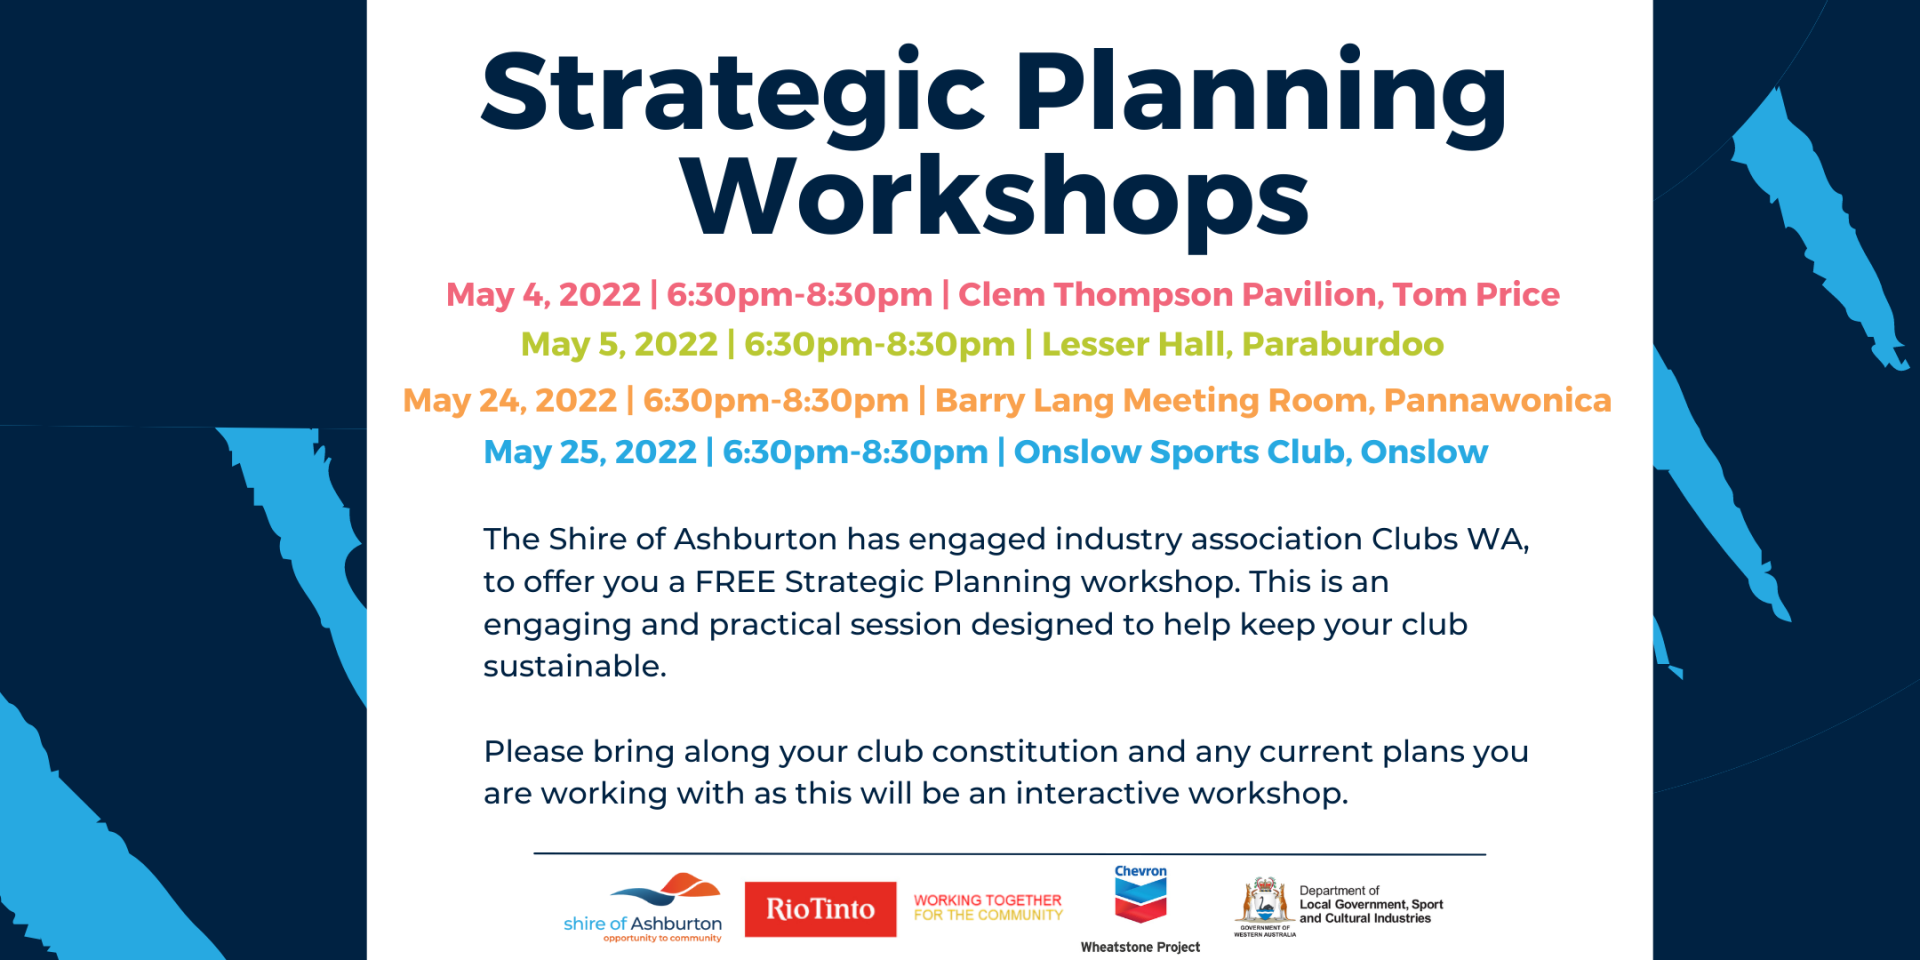 Strategic Planning Workshops